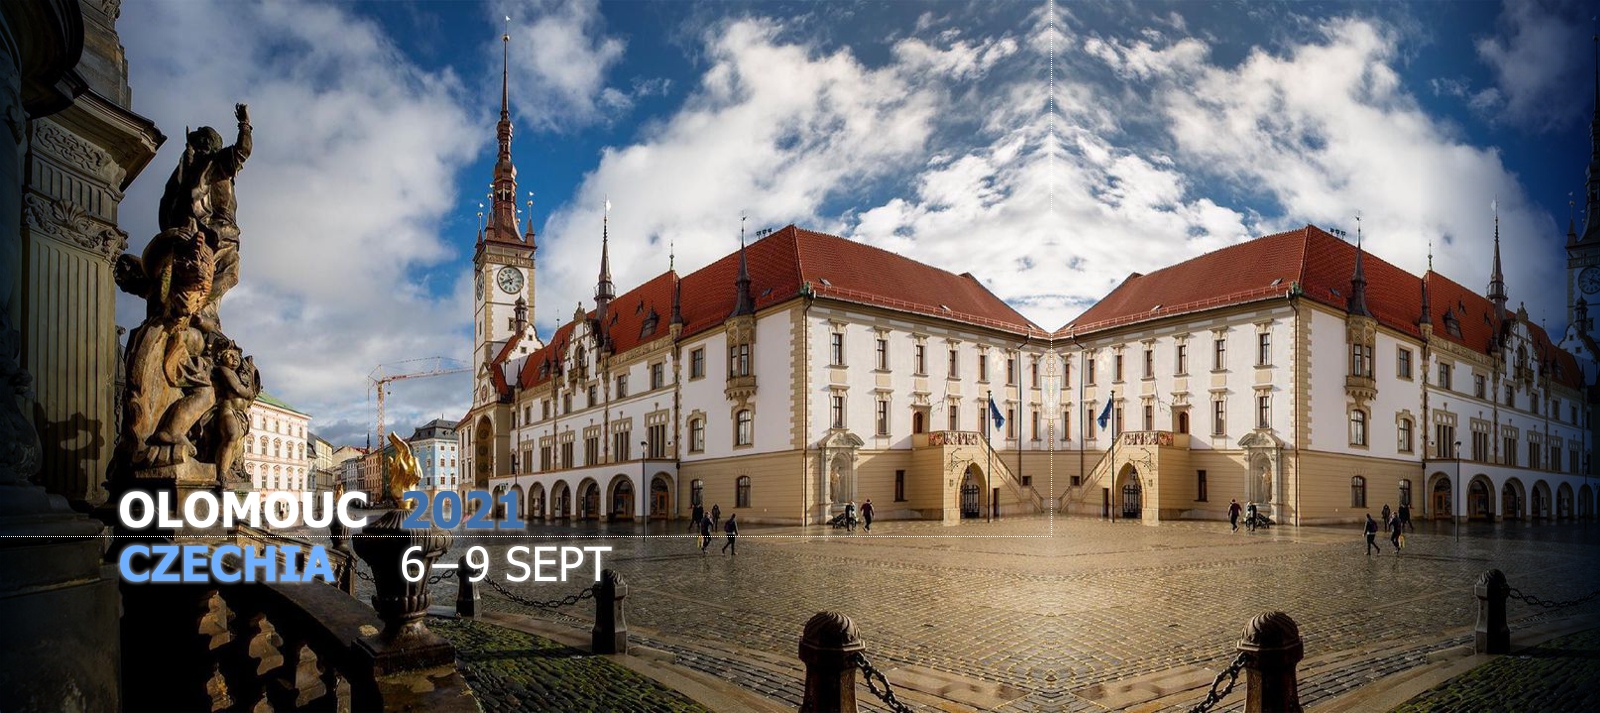 Olomouc: Horní náměstí (Upper Square)